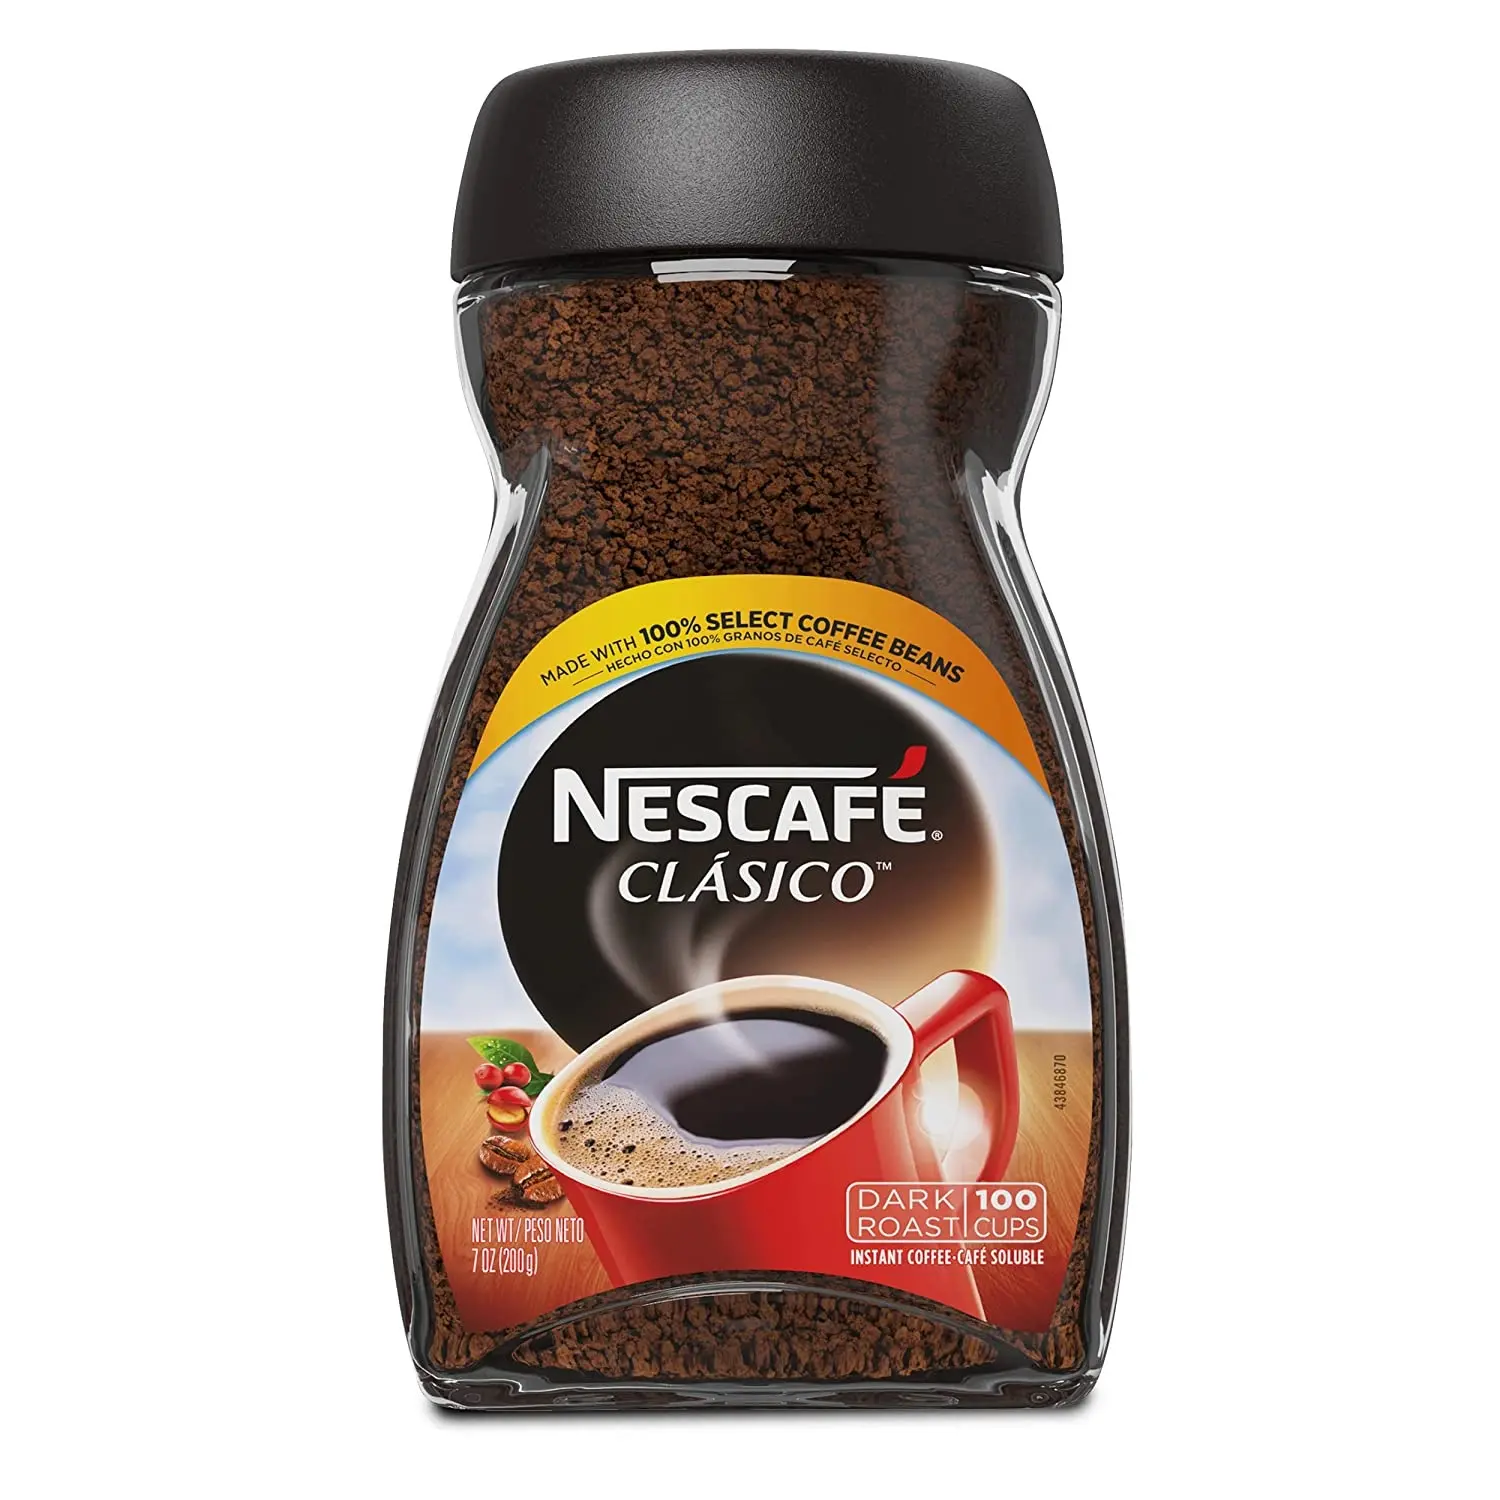 Vente en gros et fournisseur de Nescafé classique/pur instantané Nescafé café meilleure qualité prix d'usine en vrac acheter en ligne